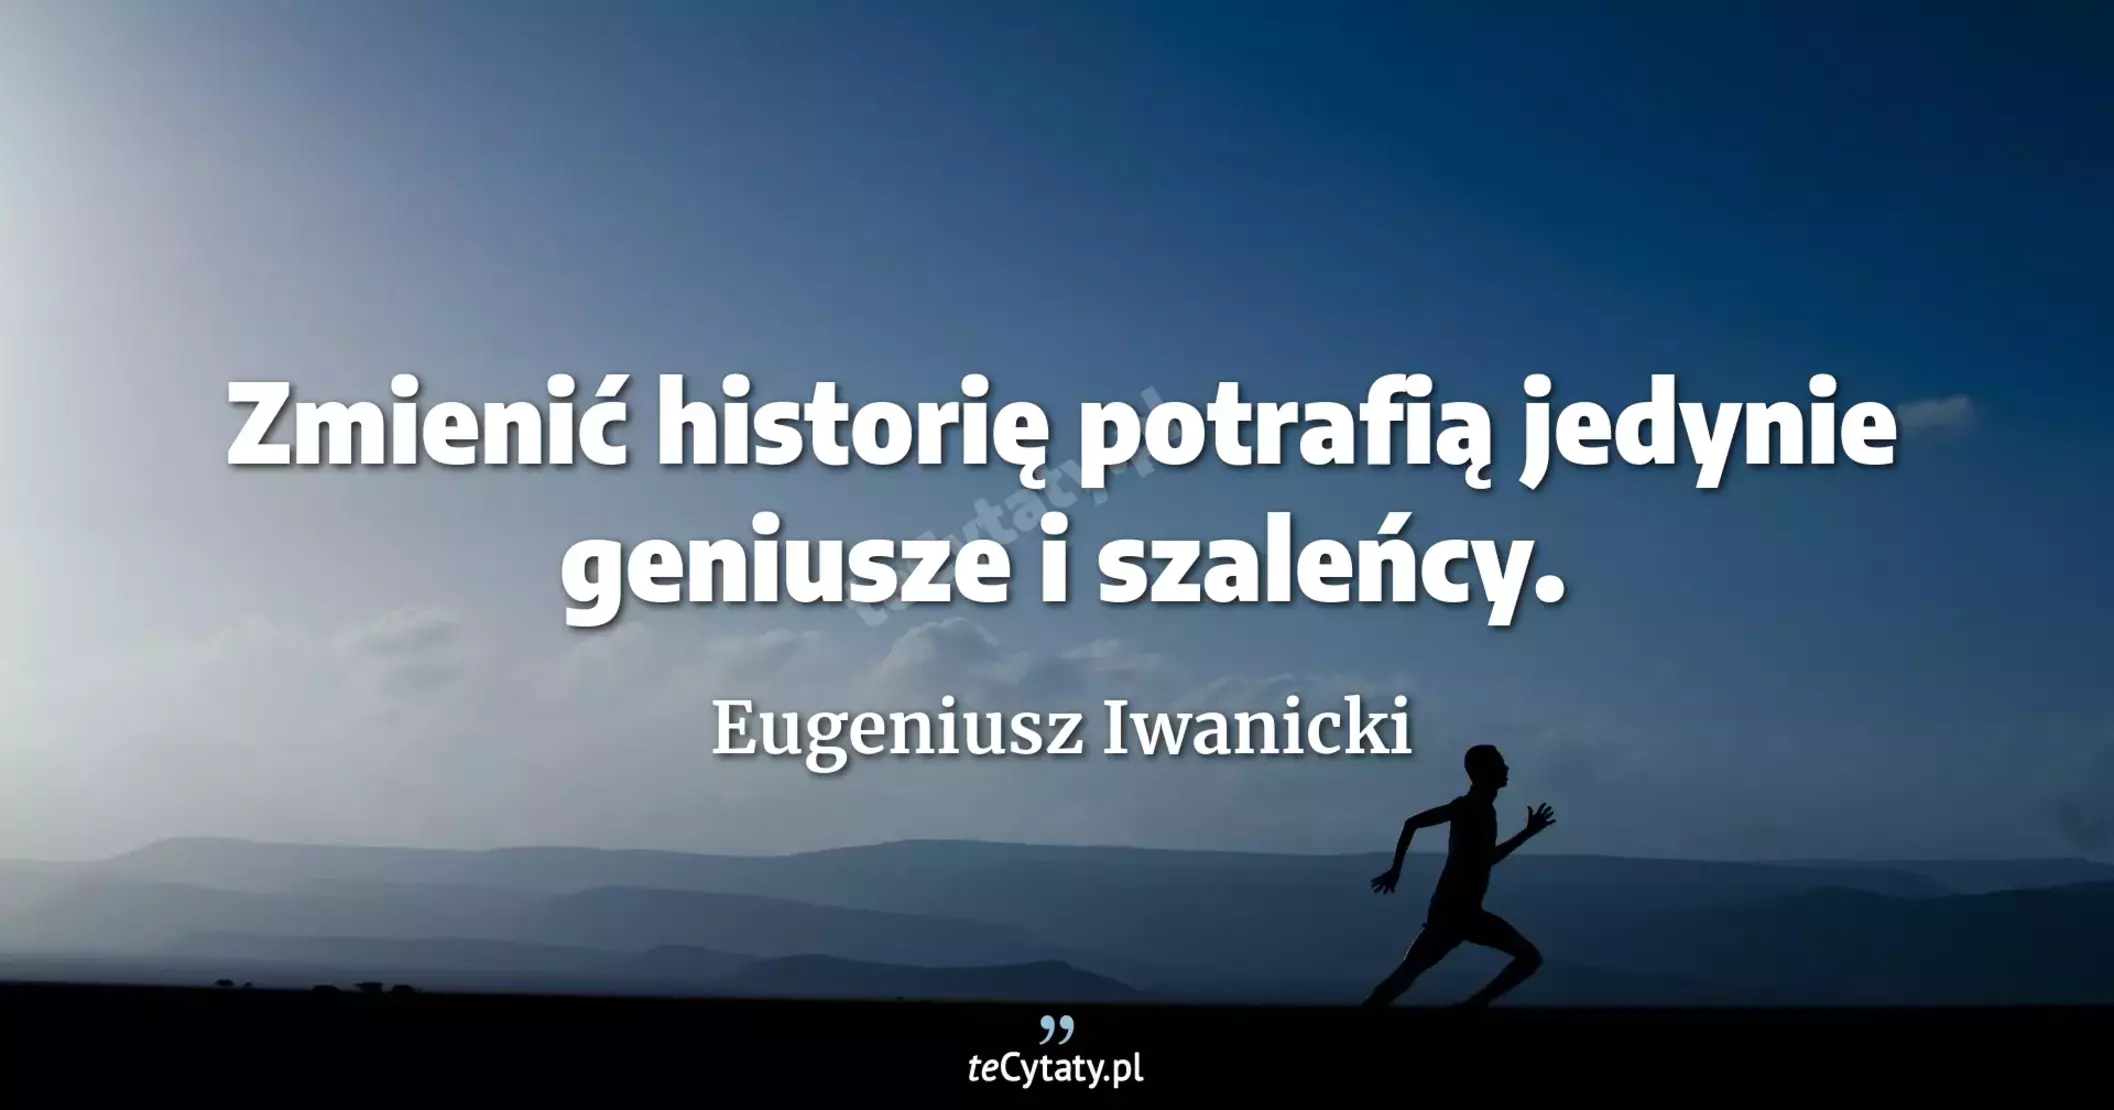 Zmienić historię potrafią jedynie geniusze i szaleńcy. - Eugeniusz Iwanicki